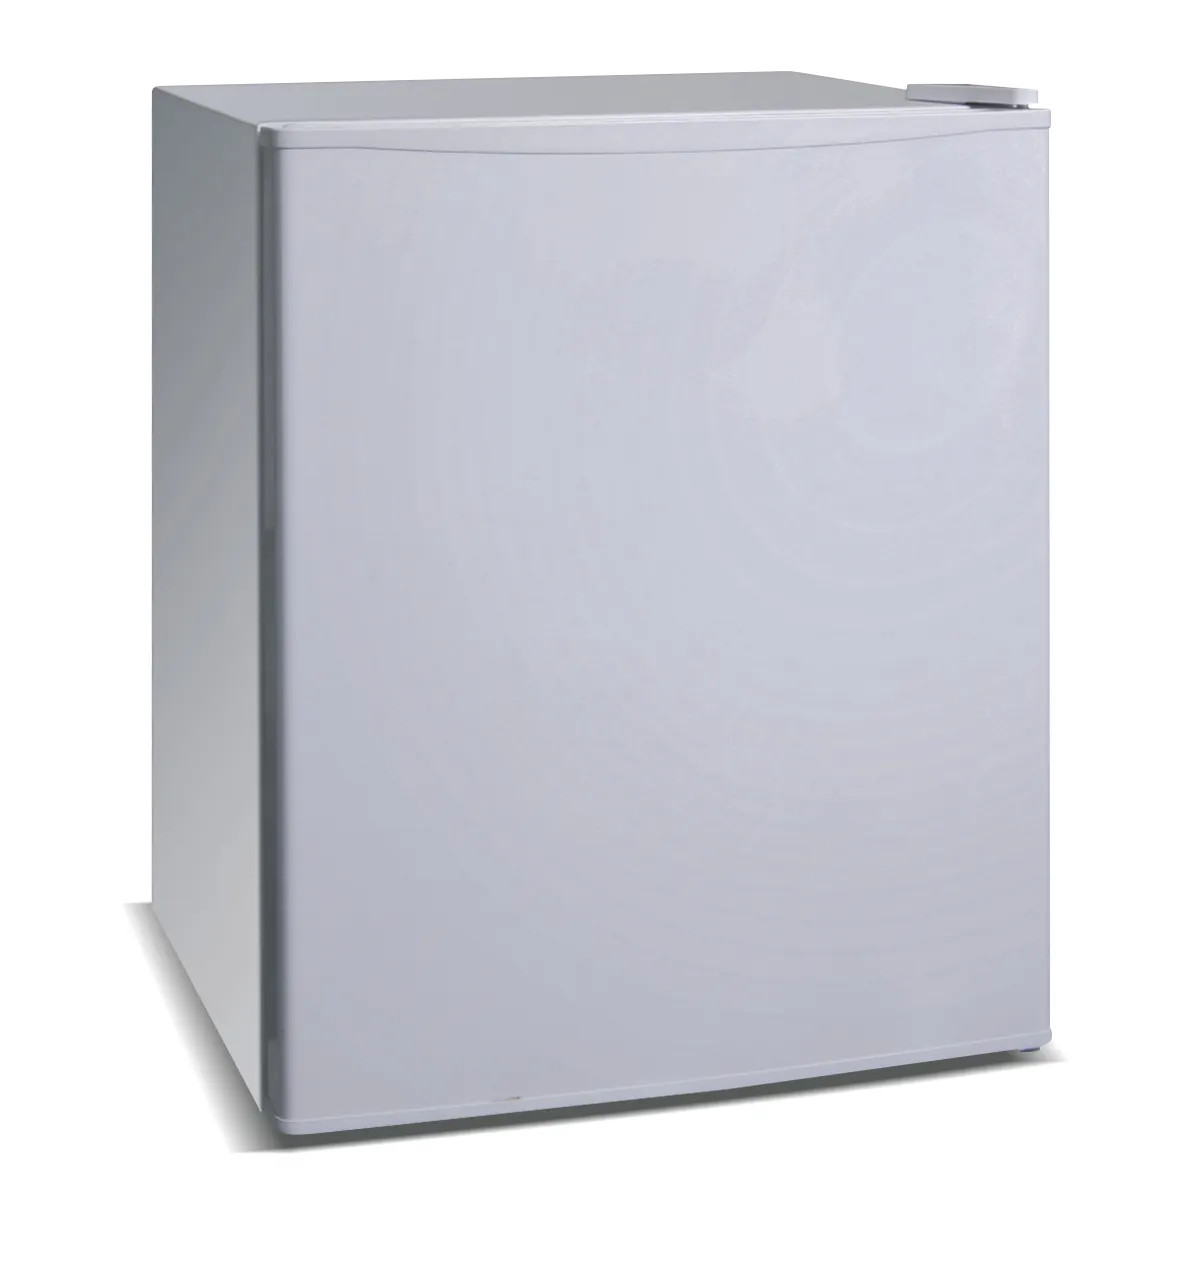 ตู้เย็นมินิบาร์สีขาวในครัวเรือน ขายตู้เย็นขนาดเล็กและตู้แช่แข็งบ้าน